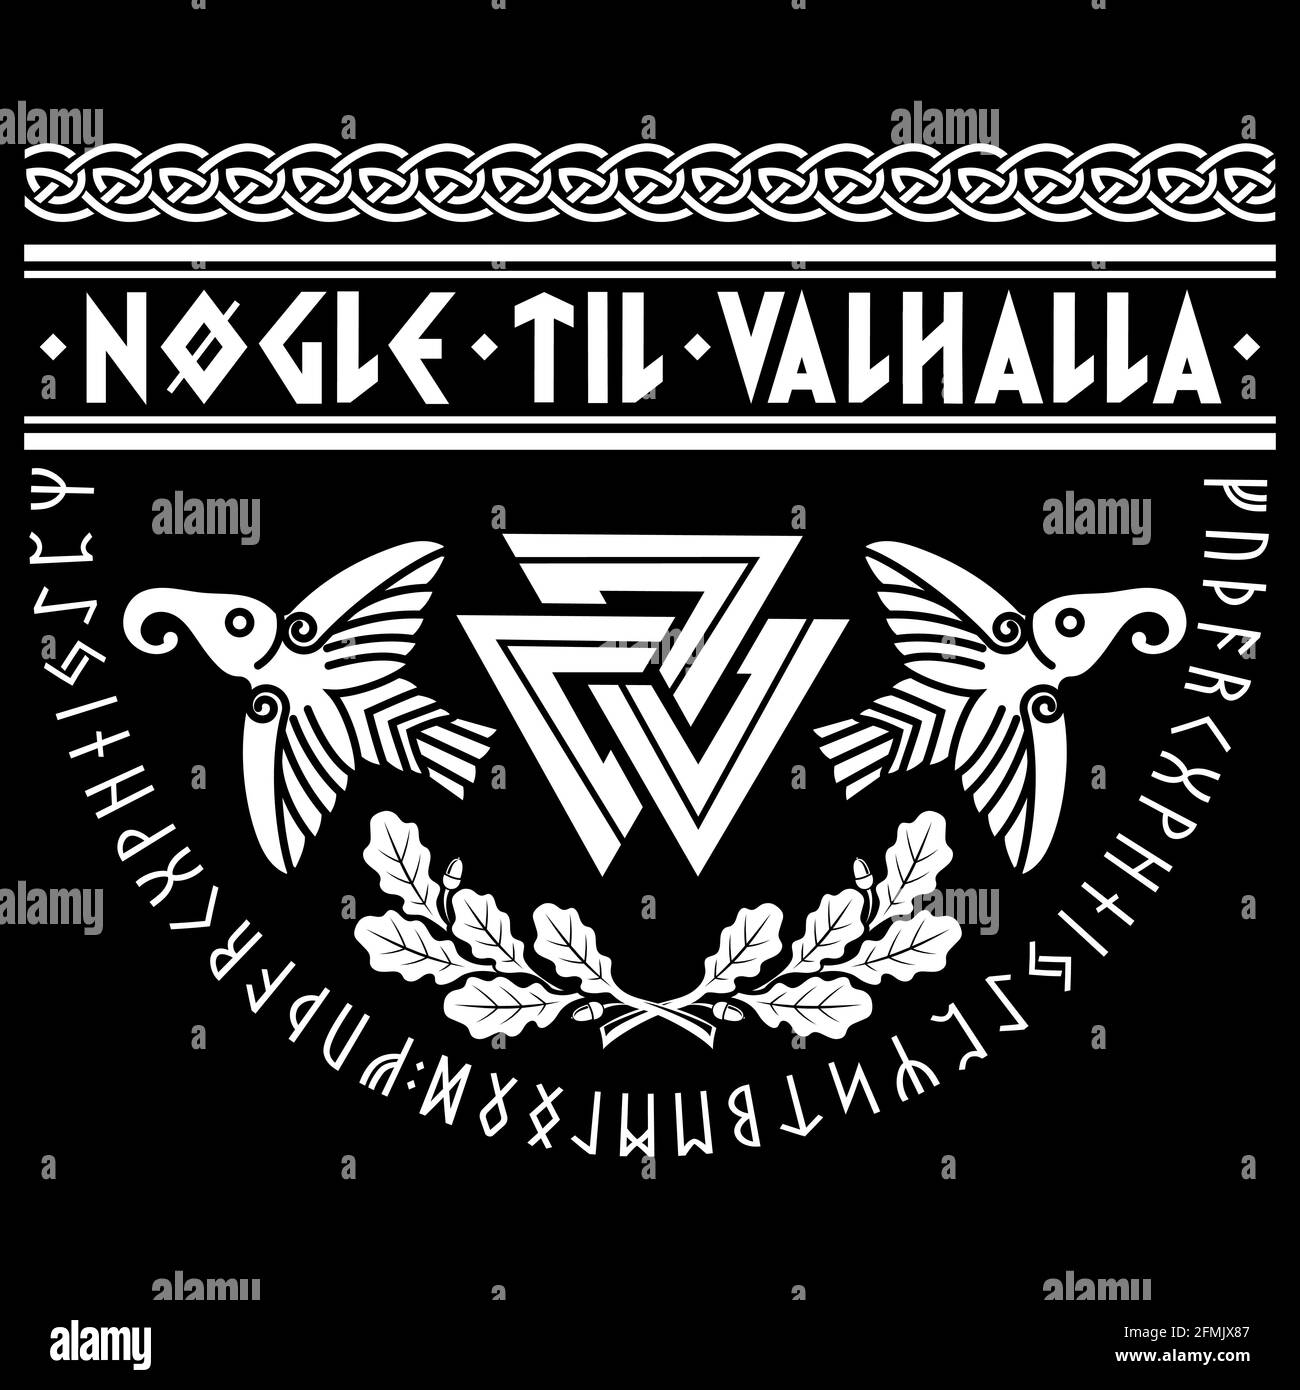 Valknut ancien païen symbole germanique nordique, anciennes runes scandinaves, slogan Viking - les clés de Valhalla, feuilles de chêne et deux corbeaux Illustration de Vecteur